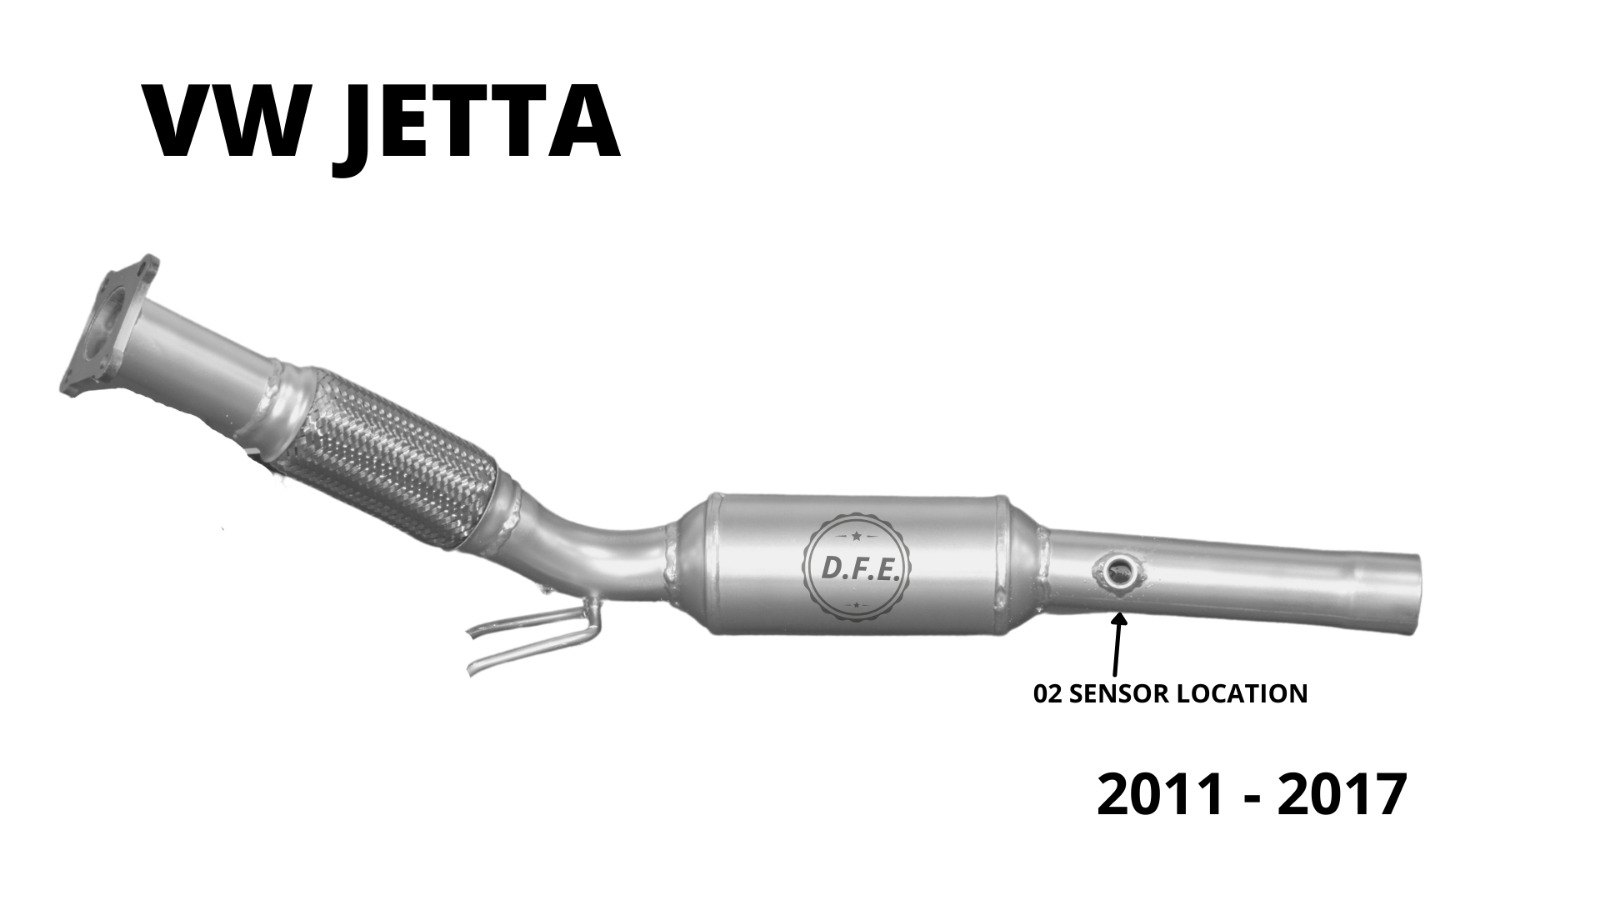 Catalytic converter for Volkswagen Jetta 2011 - 2017